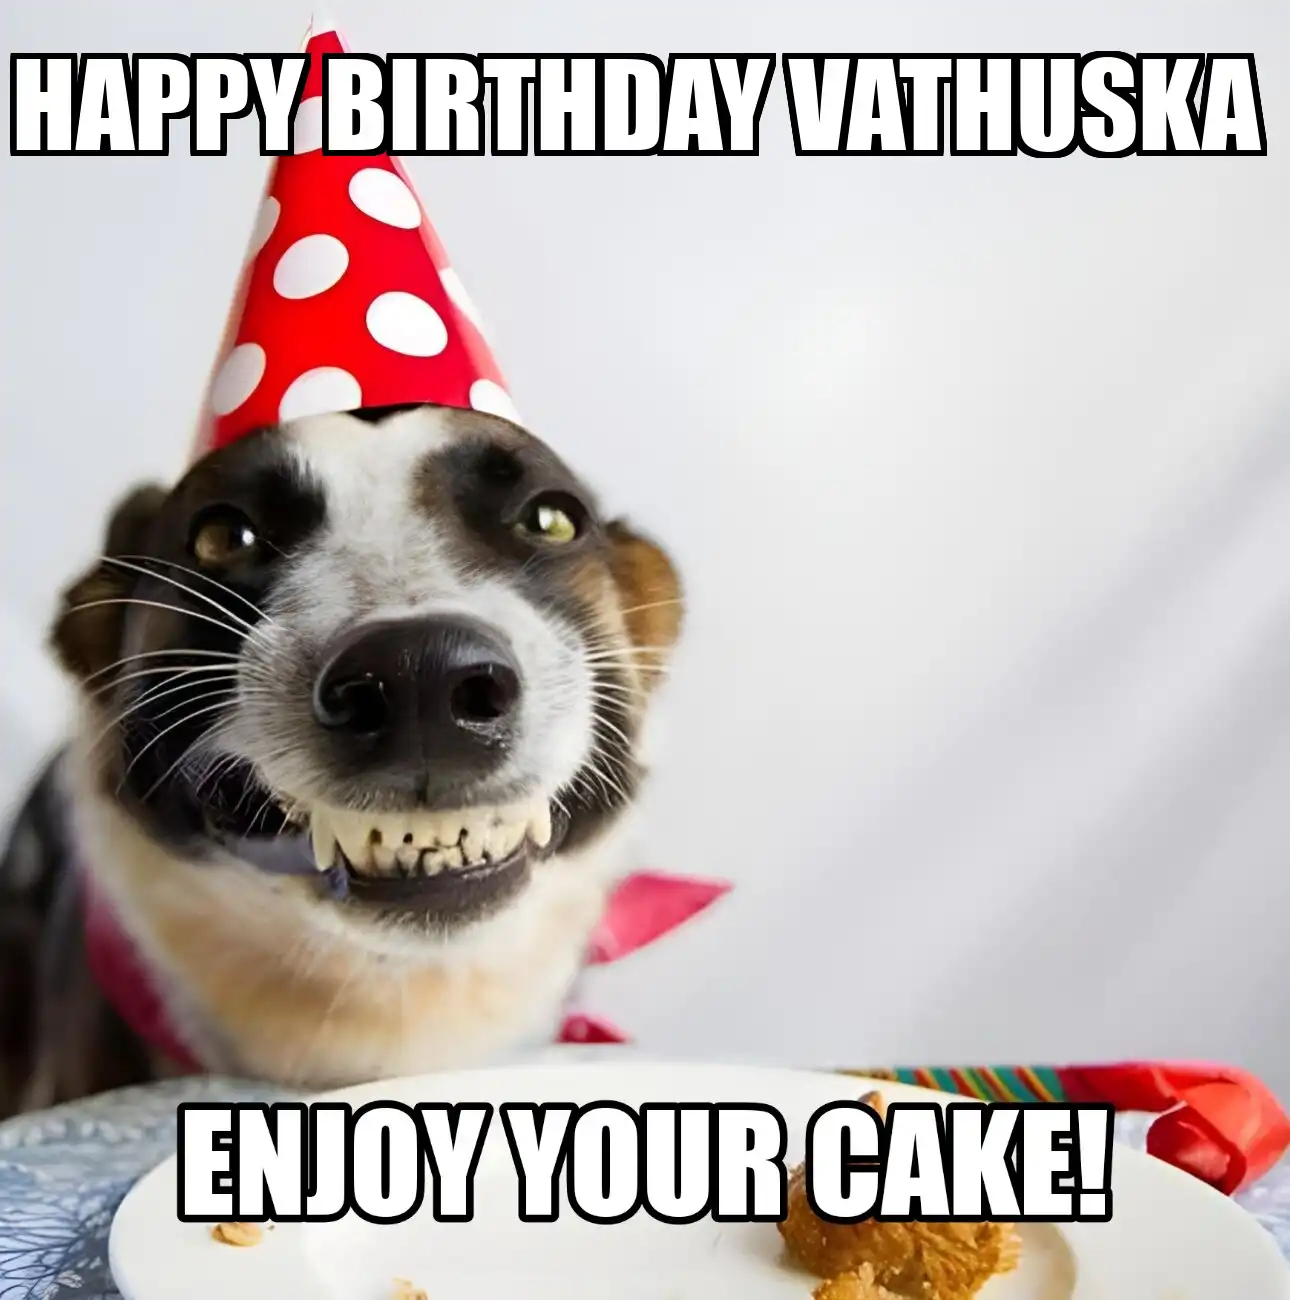 Happy Birthday Vathuska Enjoy Your Cake Dog Meme